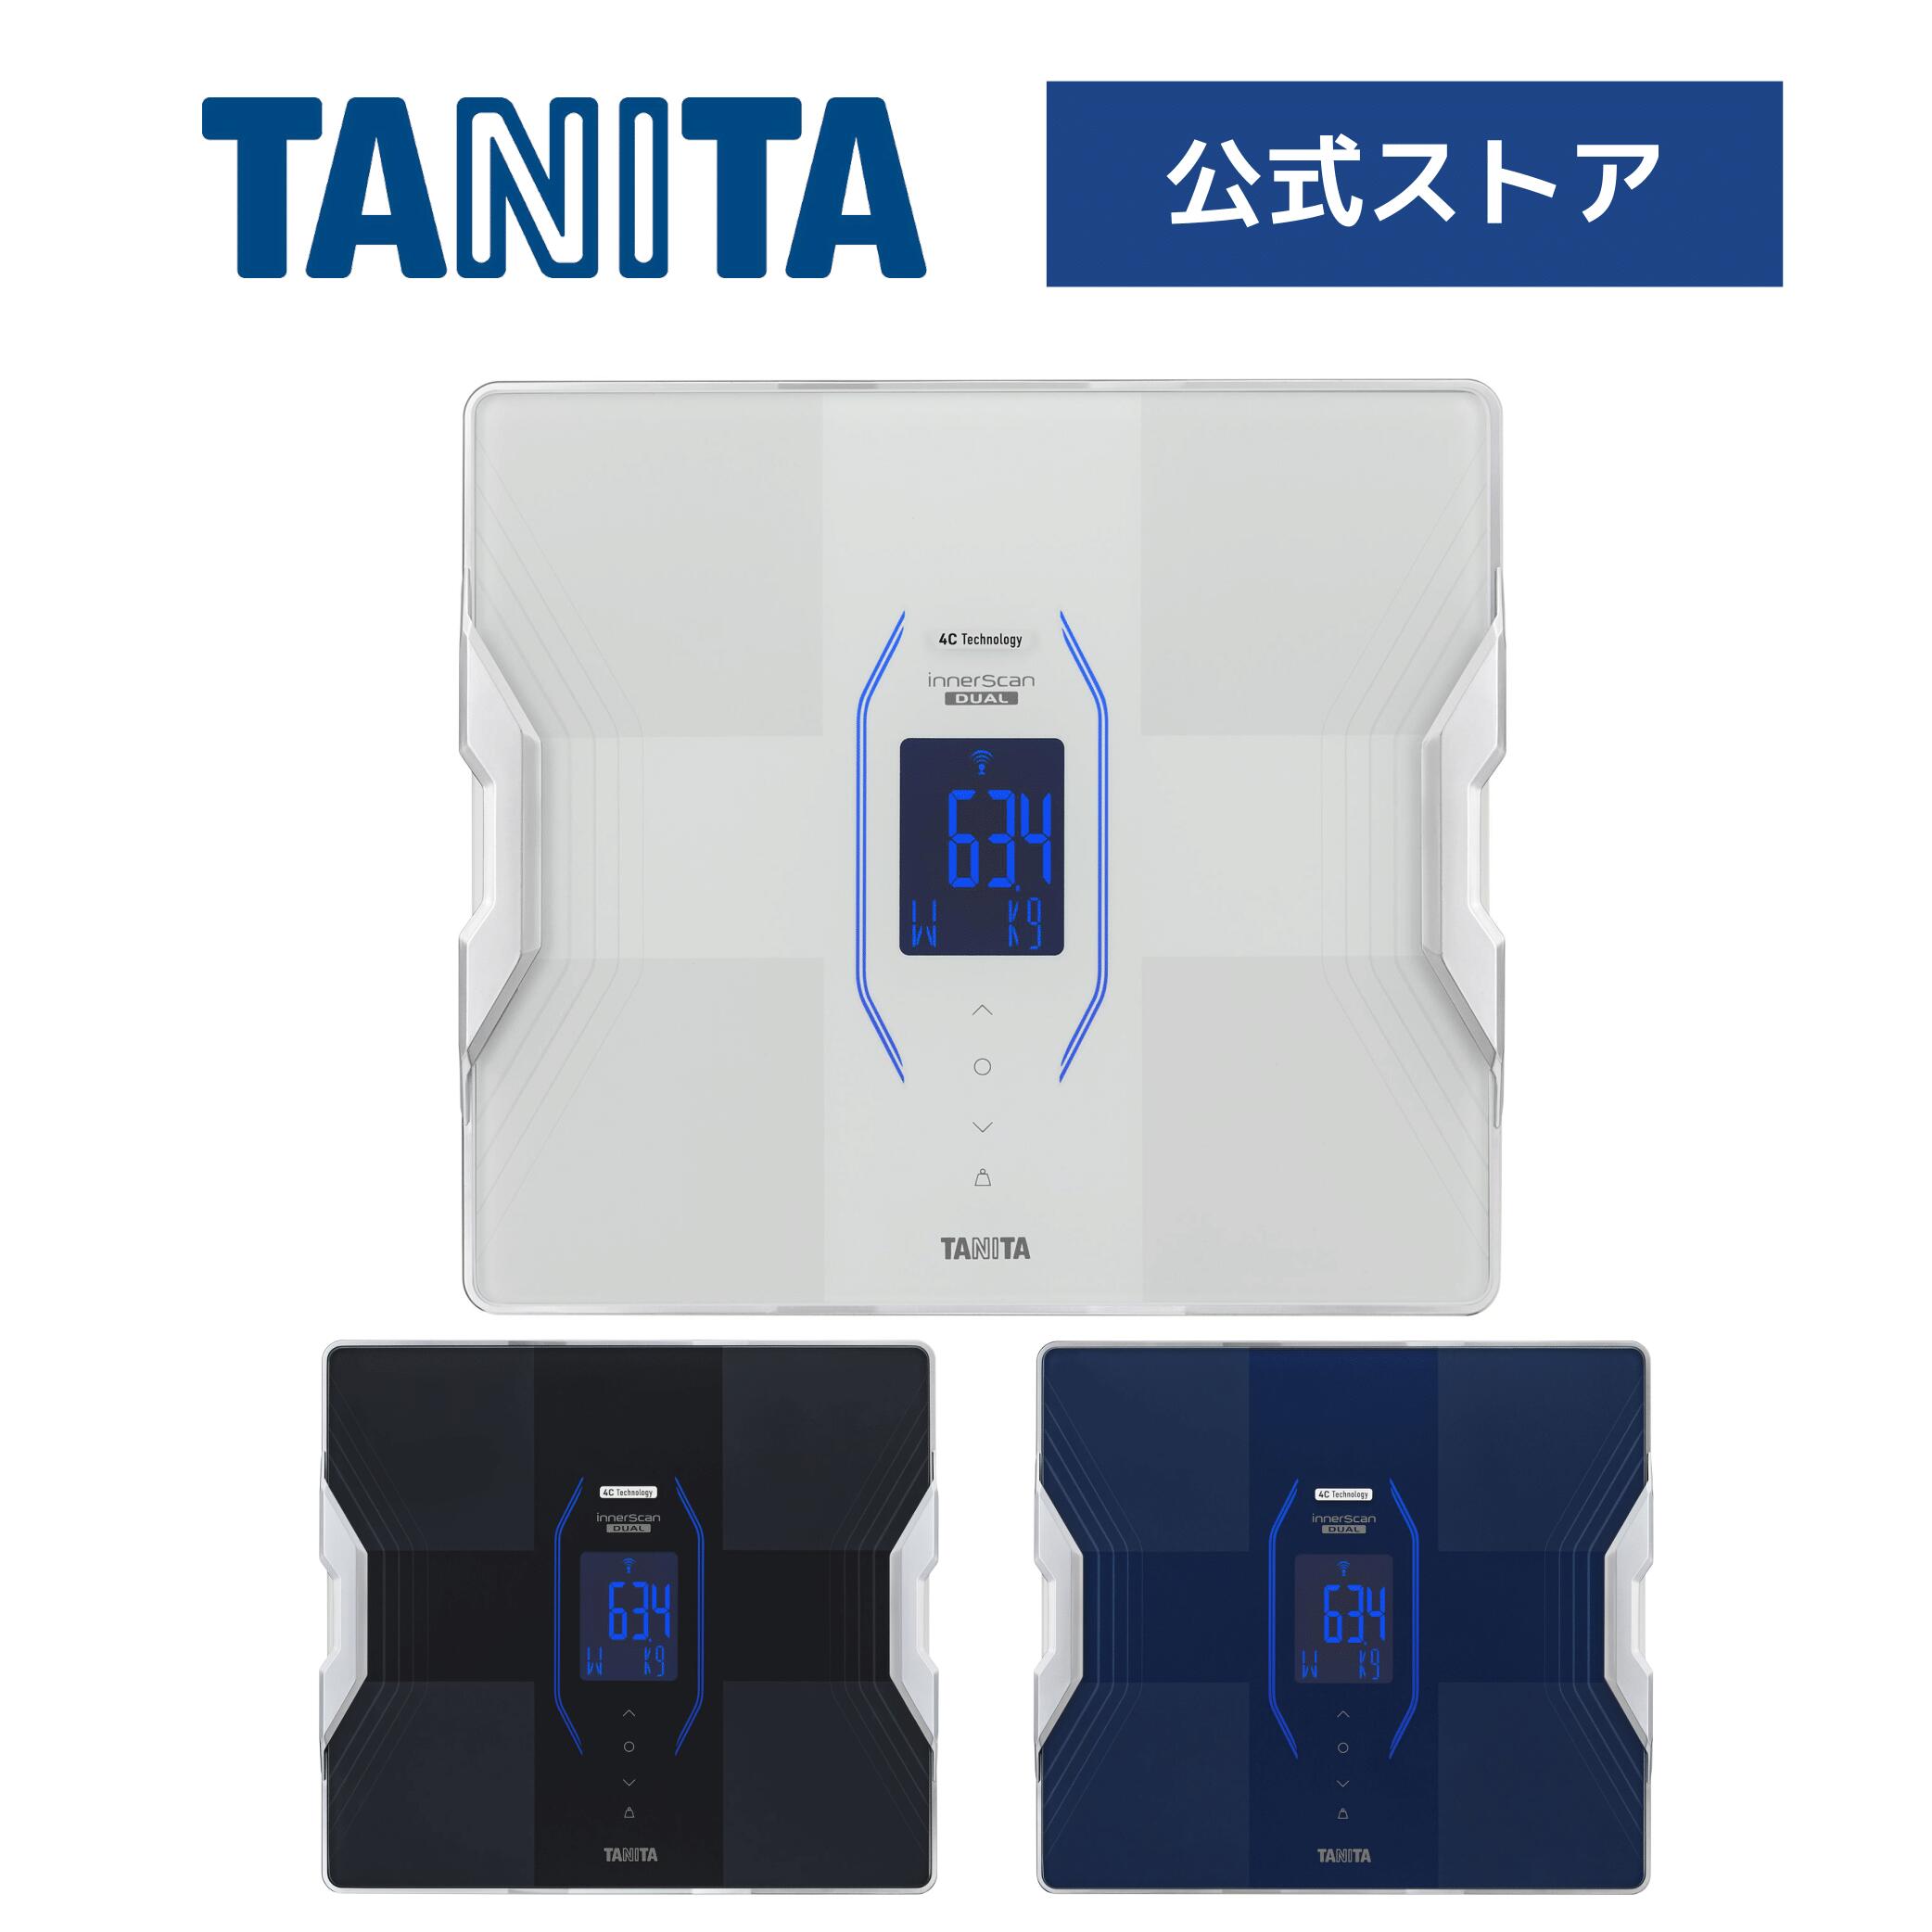 楽天市場タニタ 体重計 体組成計 体脂肪計  スマホ アプリ